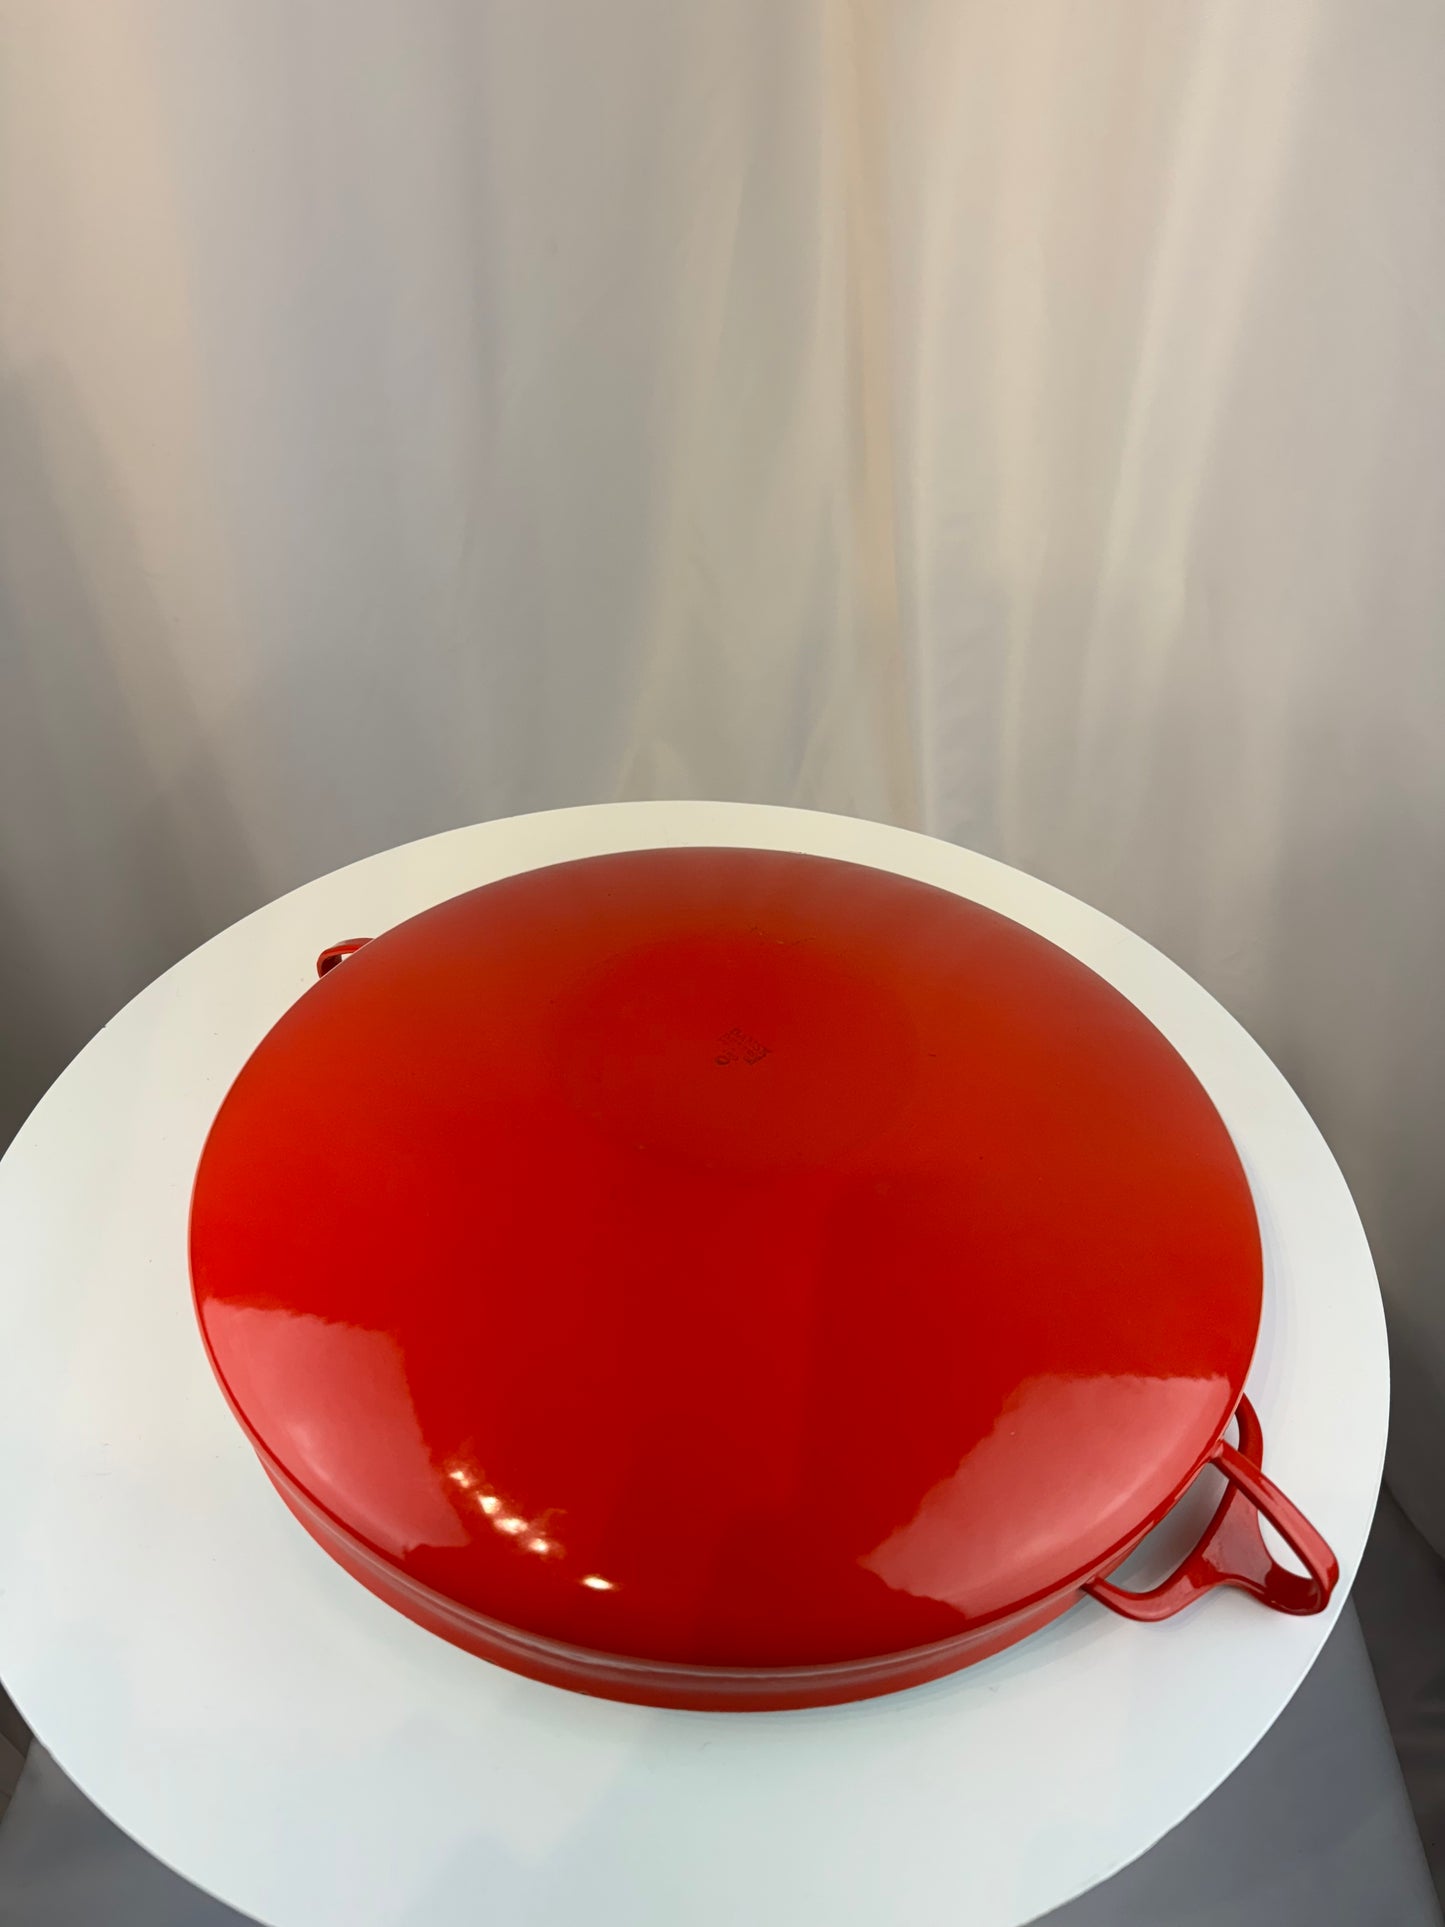 Dansk Designs Large Paella Pan - Chili Red